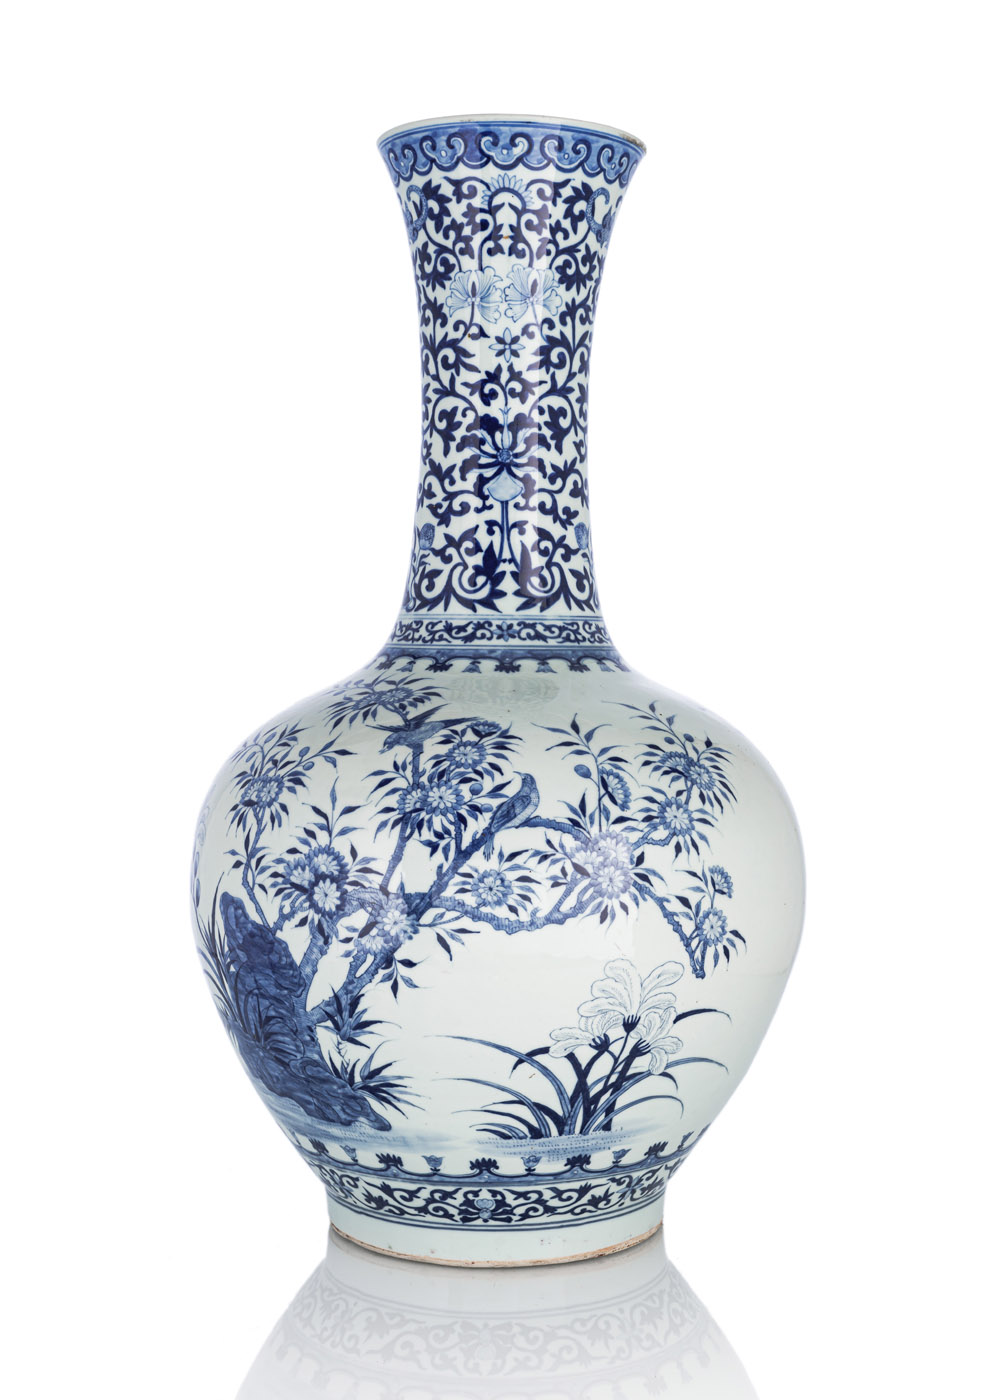 <b>Große Vase aus Porzellan mit unterglasurblauem Dekor von Vögeln und Pflaumenblüten</b>